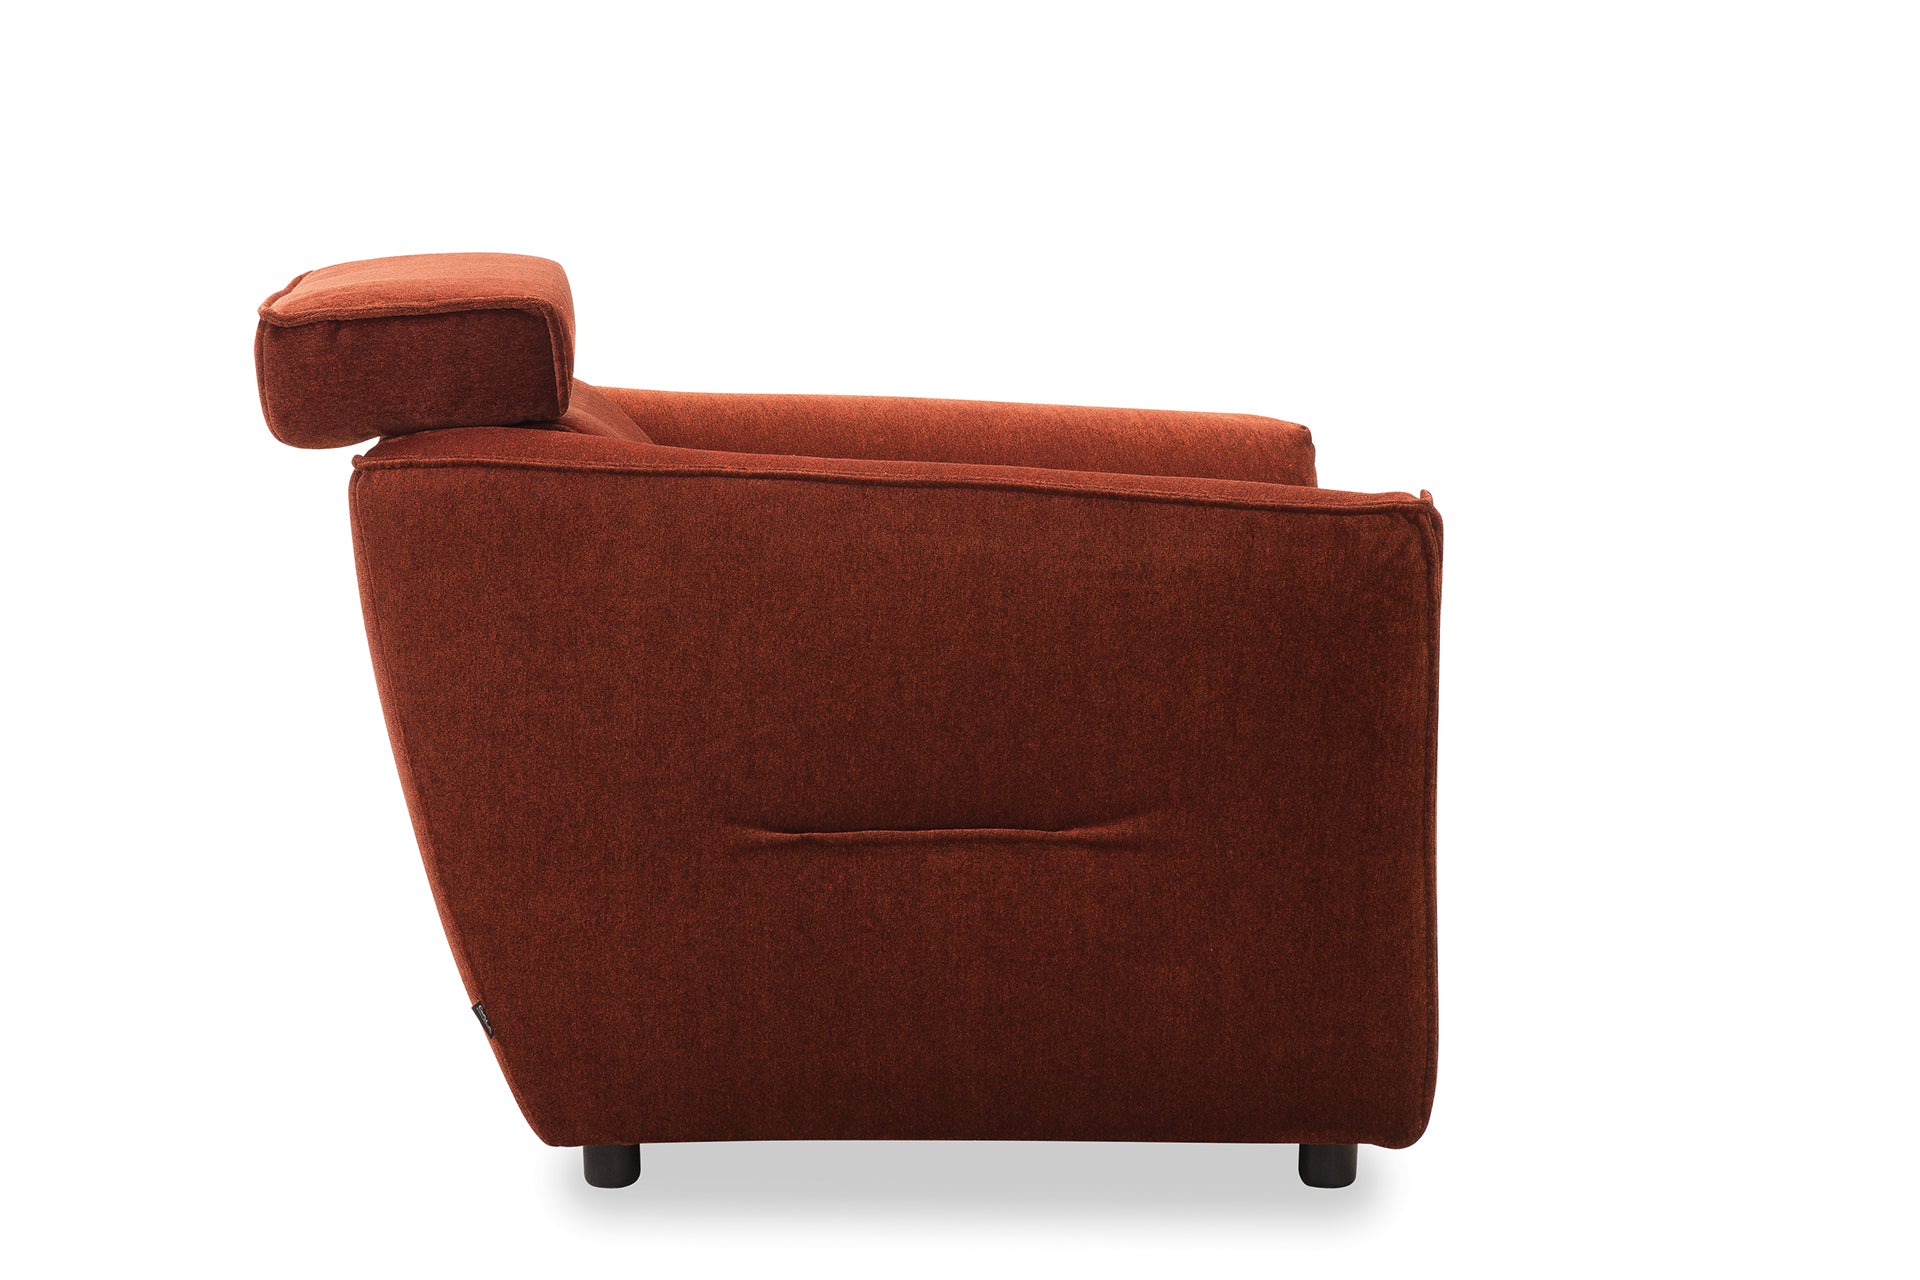 Kényelmes, rozsdabarna fotel állítható fejtámlával, hozzá illő kanapéval.